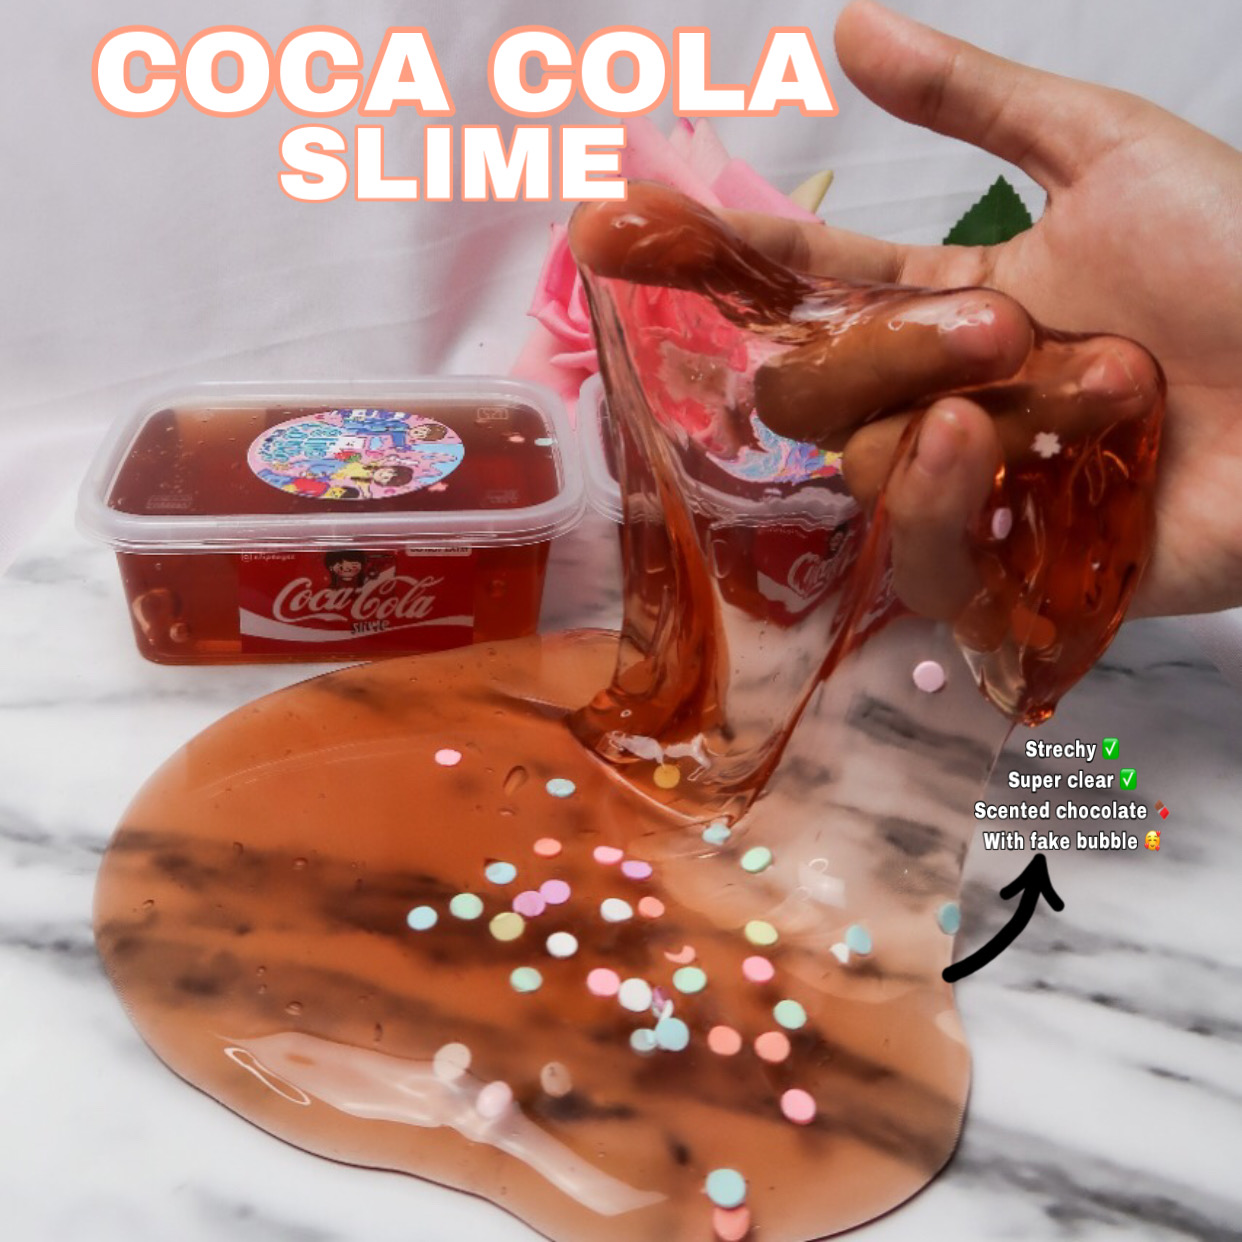 Coca cola slime